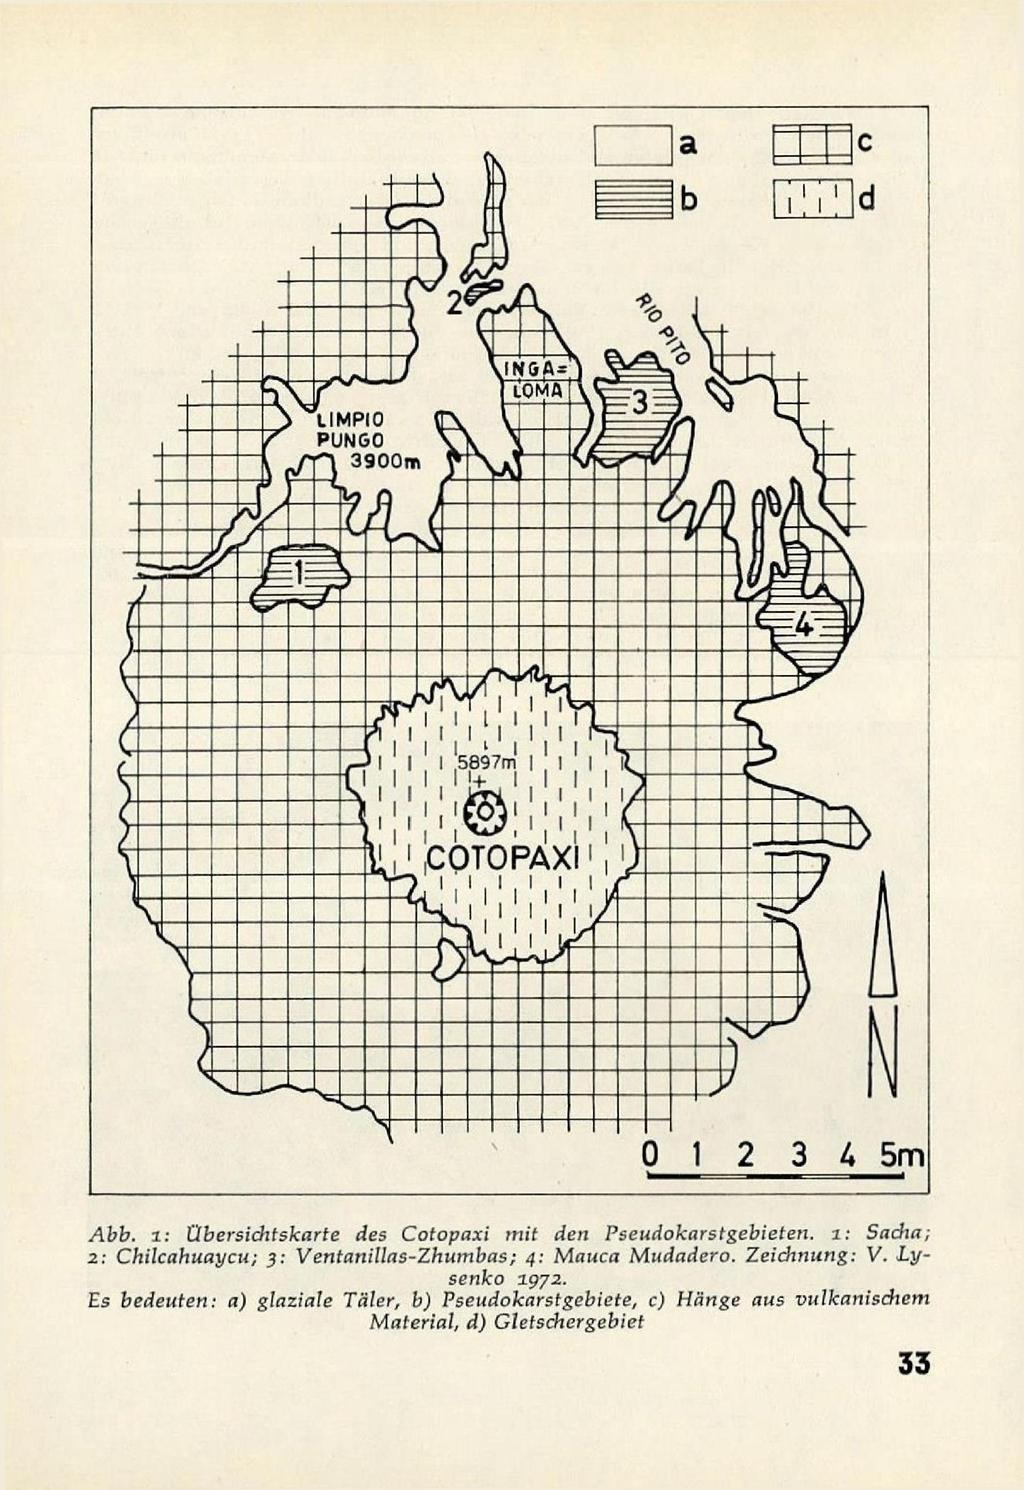 0 1 2 3 A 5m Abb. i: Übersichtskarte des Cotopaxi mit den Pseudokarstgebieten.